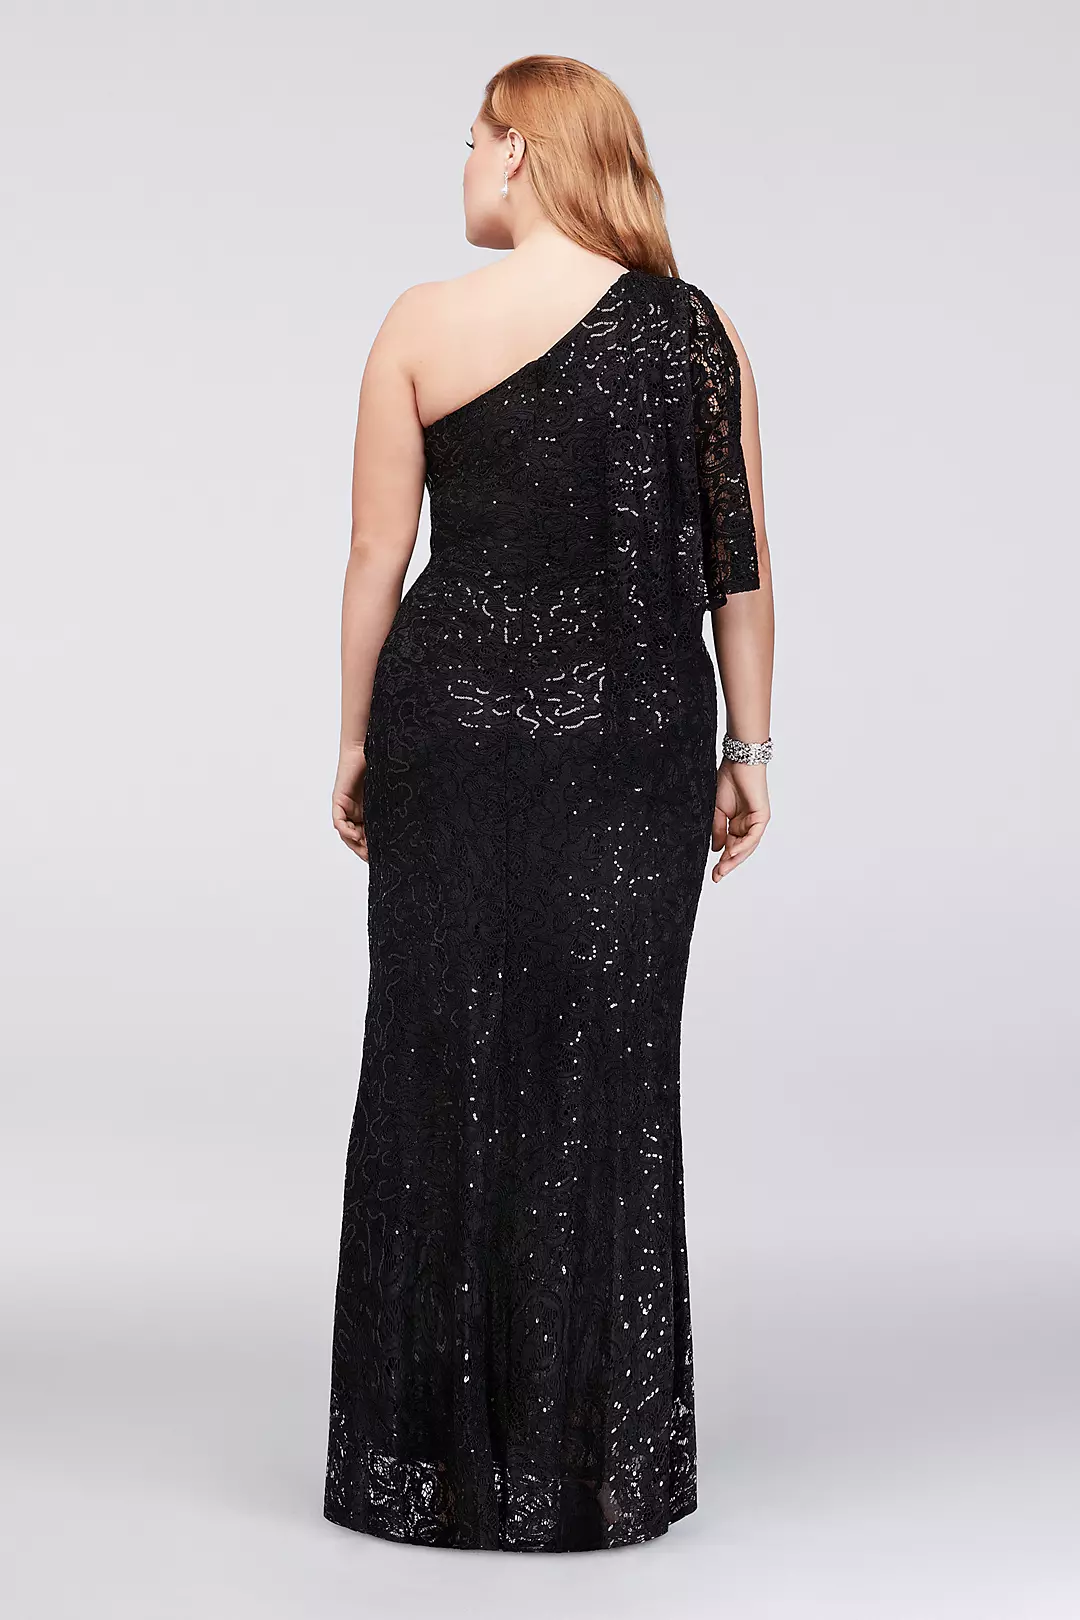 One-Shoulder Sequin Lace Plus Size Dress Image 2